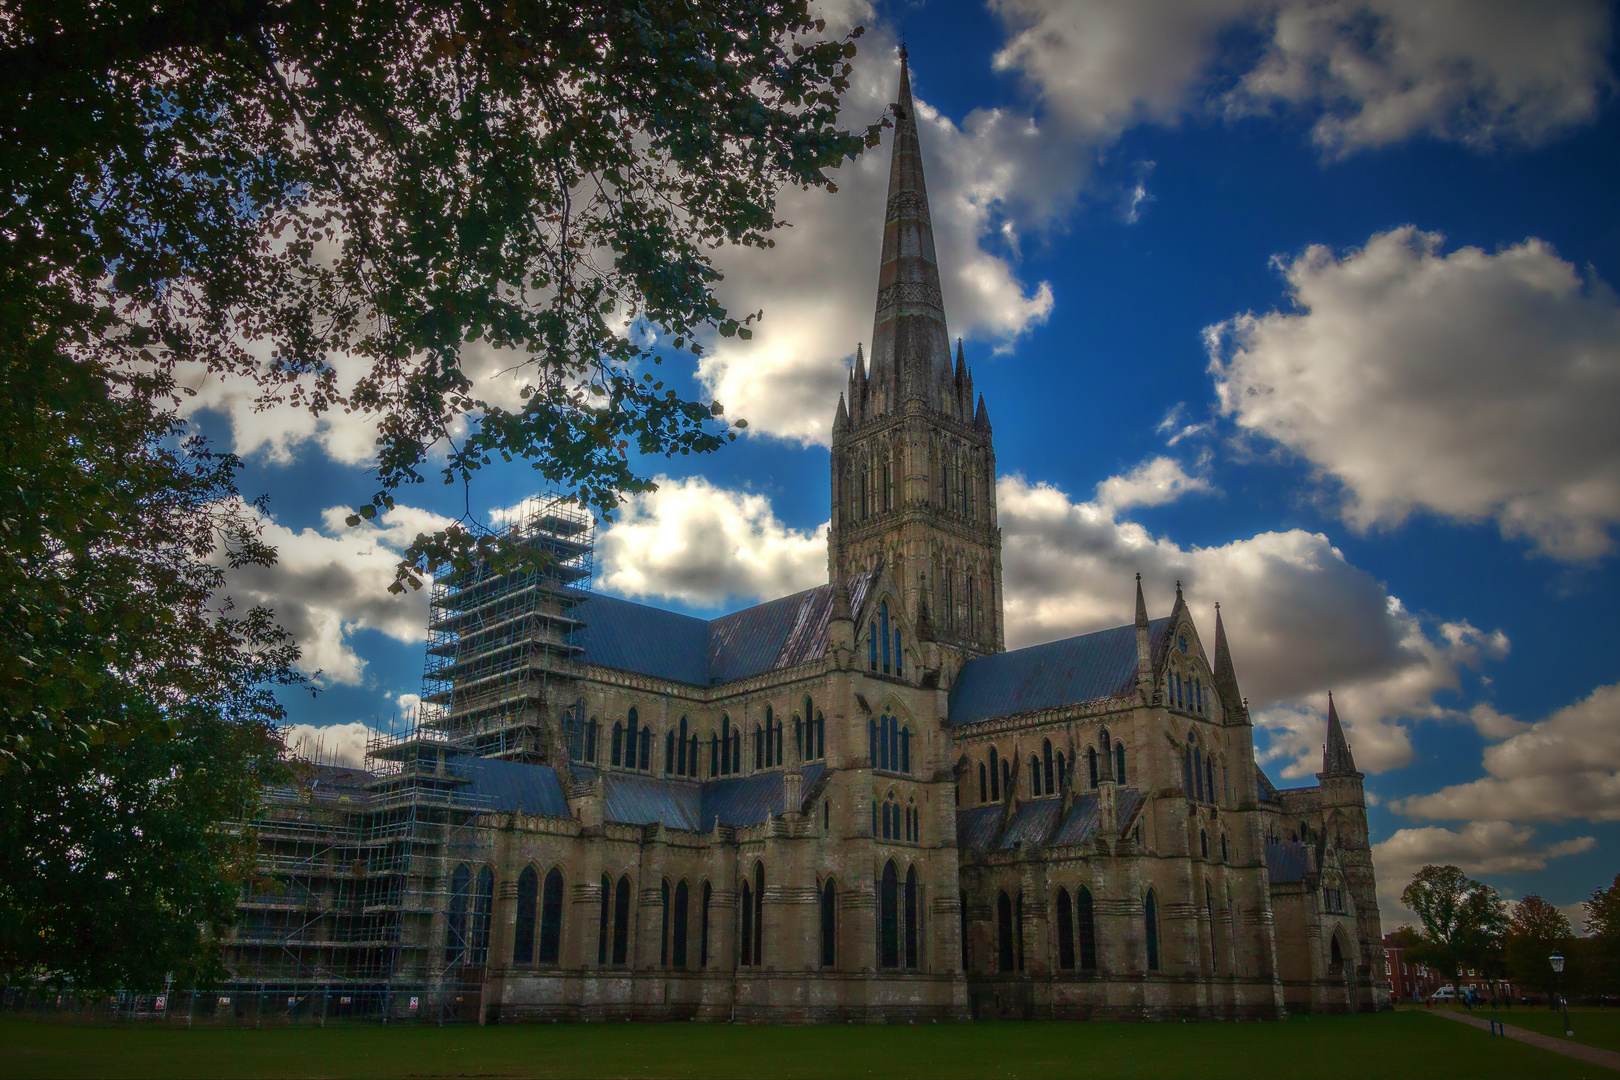 Kathedrale von Salisbury